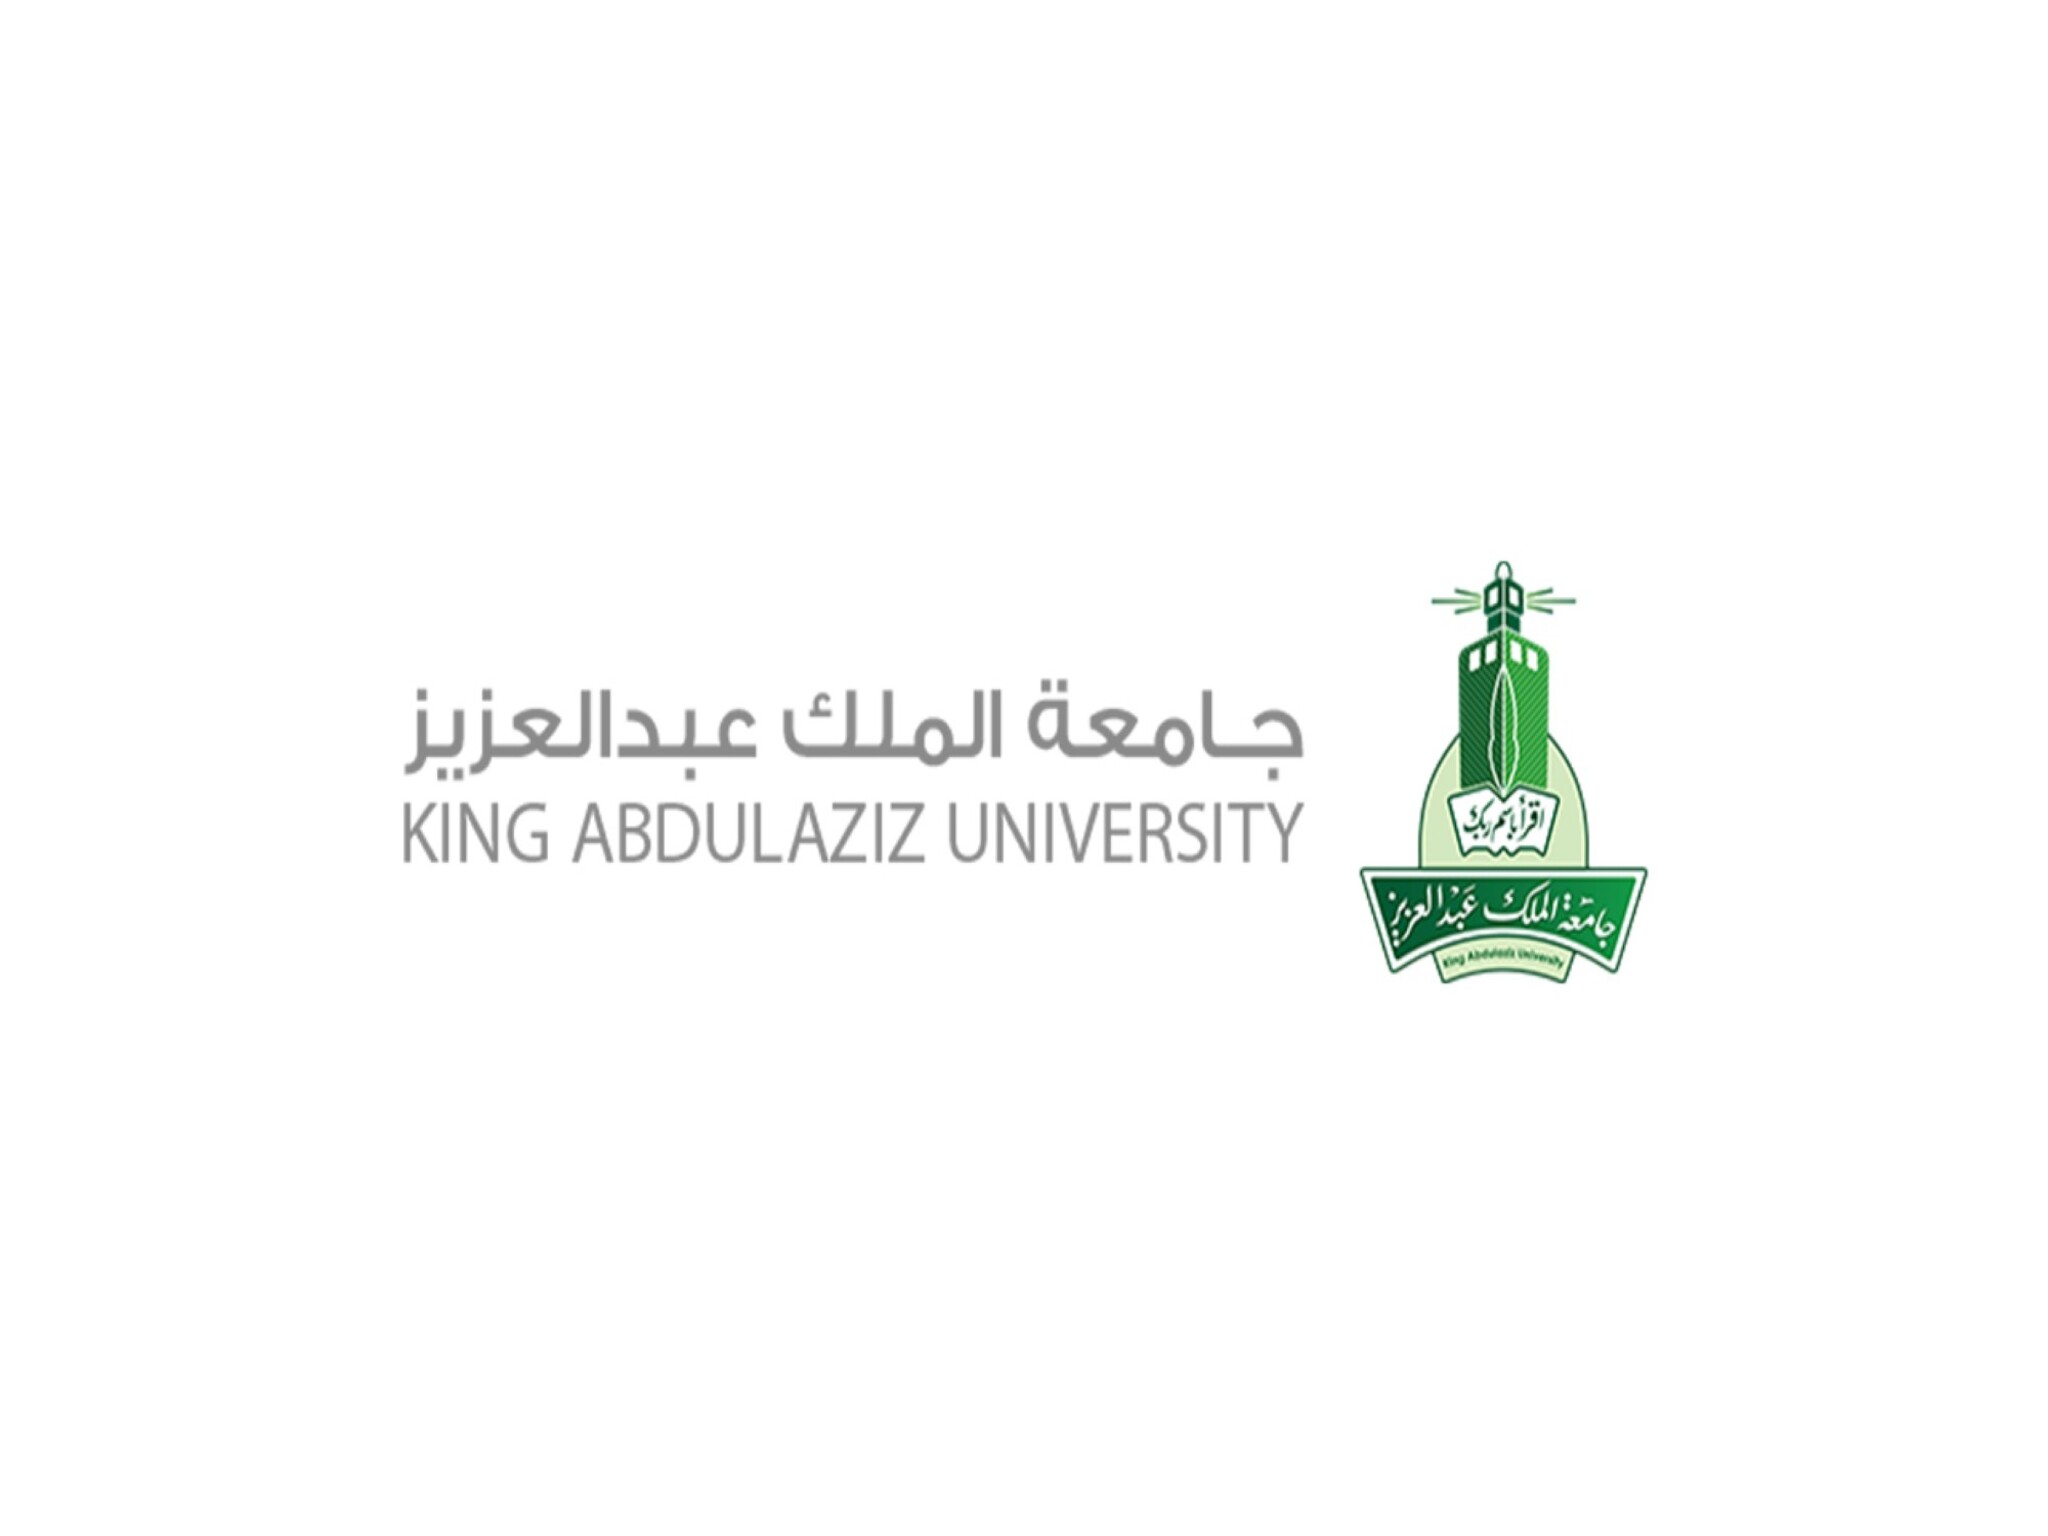 شروط التقديم في جامعة الملك عبد العزيز 1446هـ...والتخصصات المتاحة